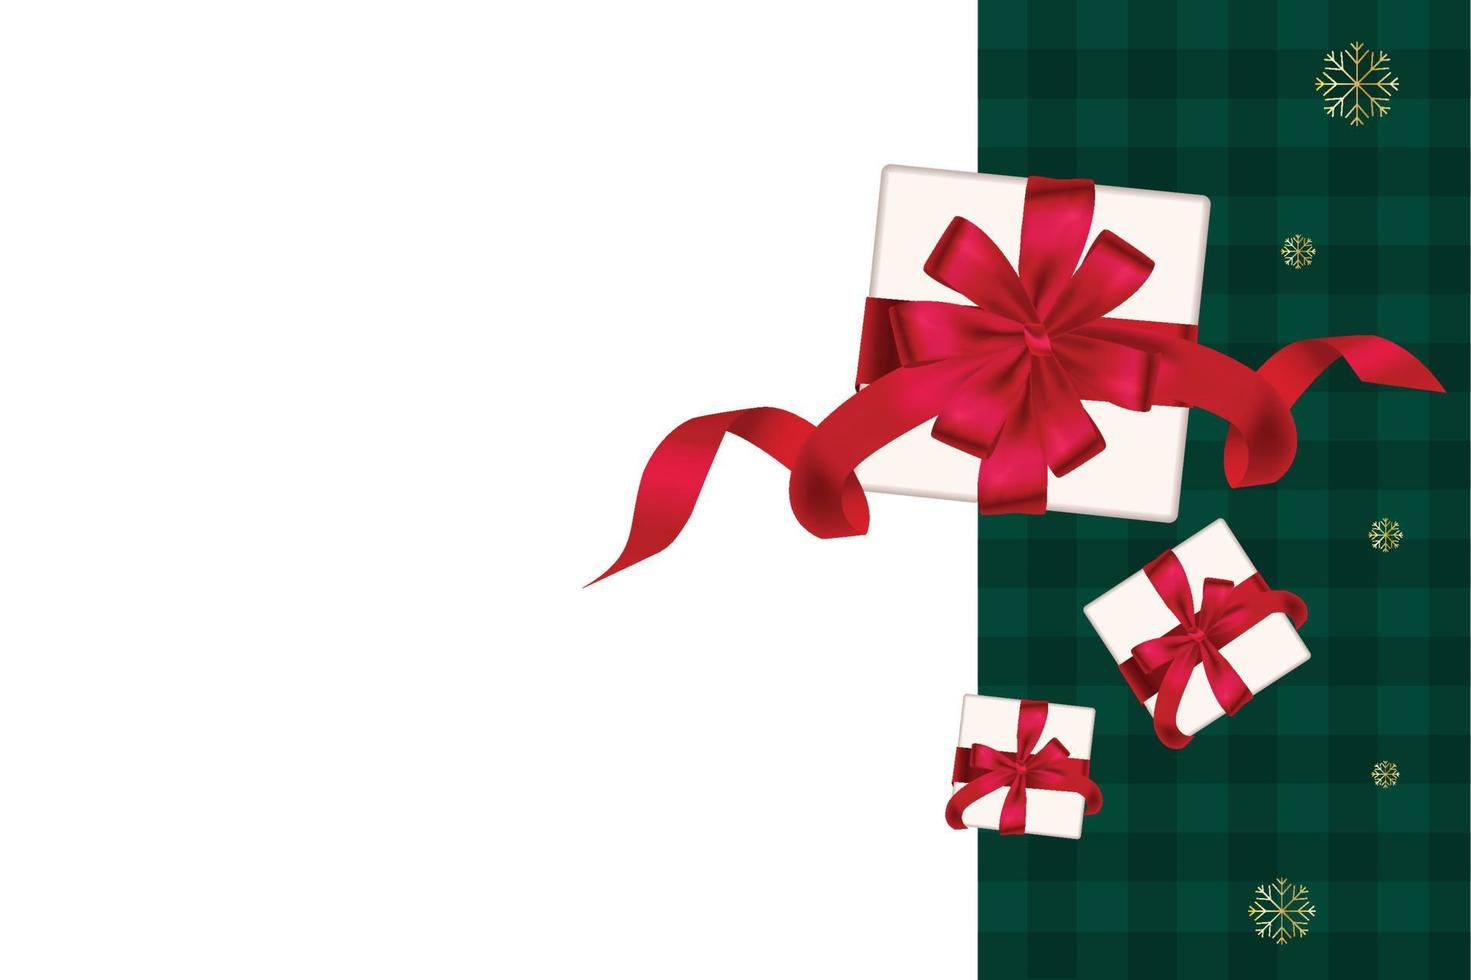 caja de regalo decorativa con lazo rojo. fondo verde a cuadros, año nuevo navidad, ilustración vectorial vector